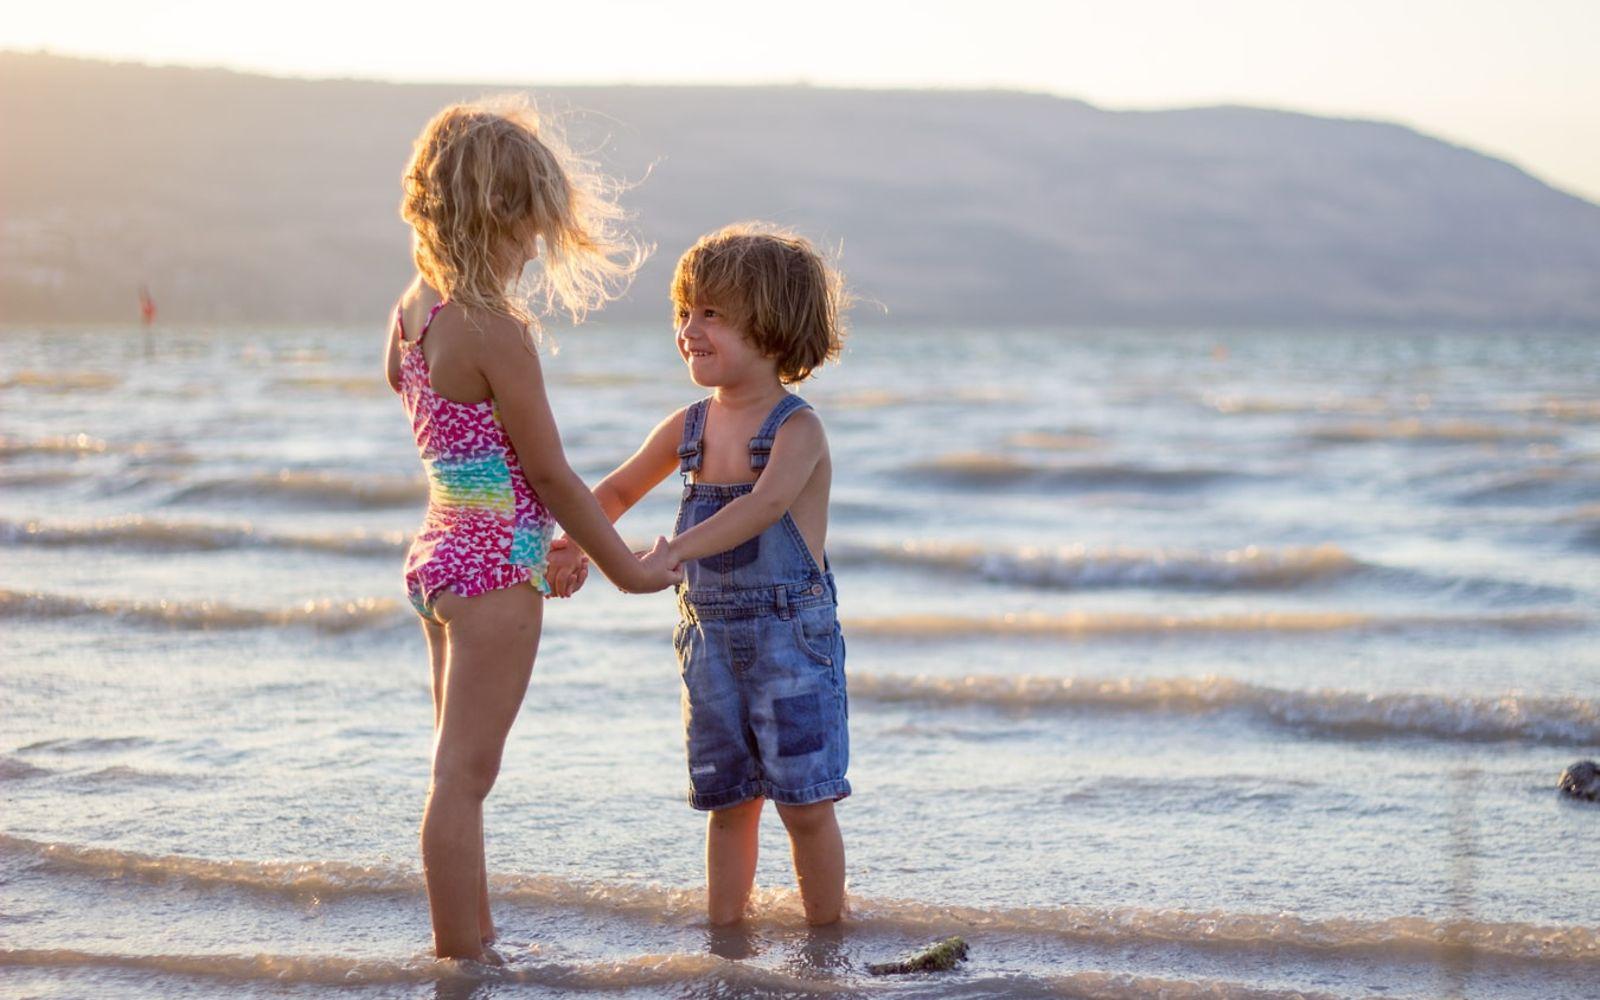 Schöne Erinnerungen an Kindheit: Zwei kleine Kinder stehen am Meer und halten sich an den Händen.